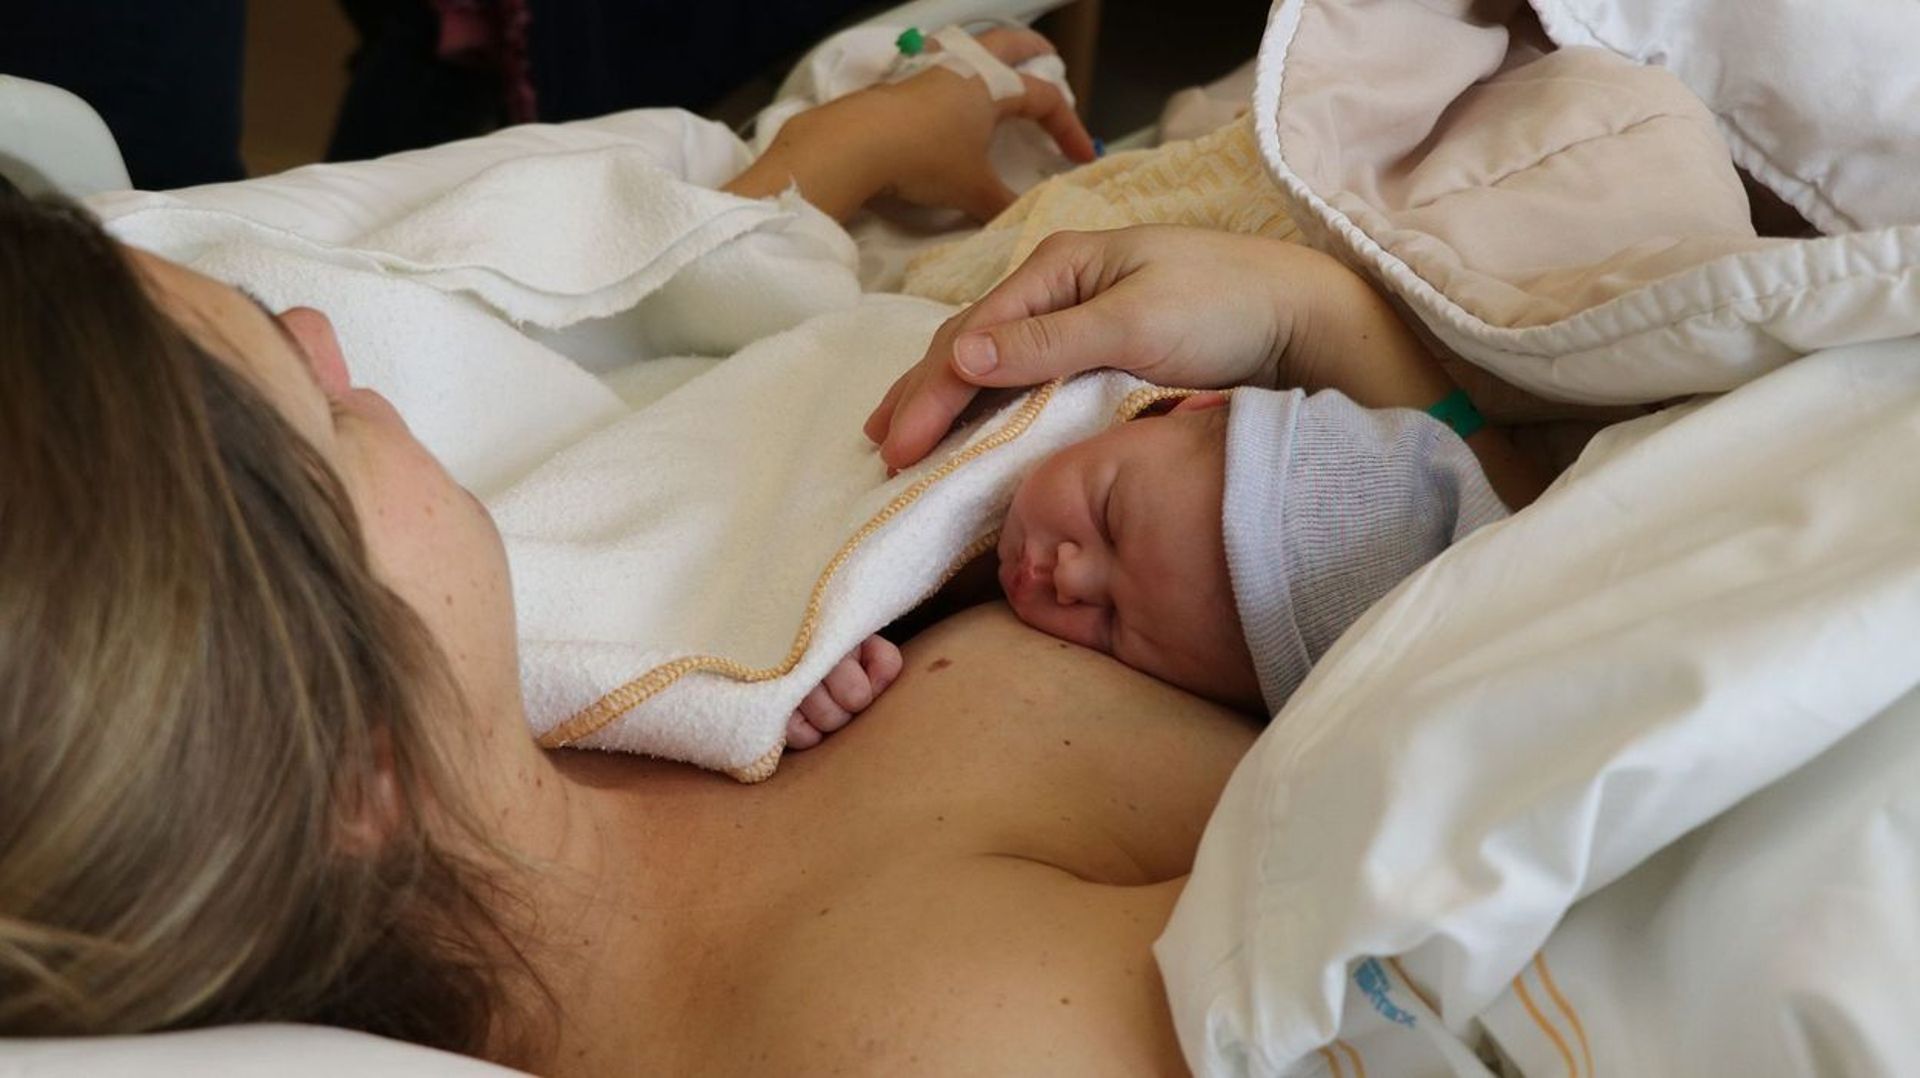 Fermeture de maternités: la Wallonie défendra "fermement" ses spécificités régionales